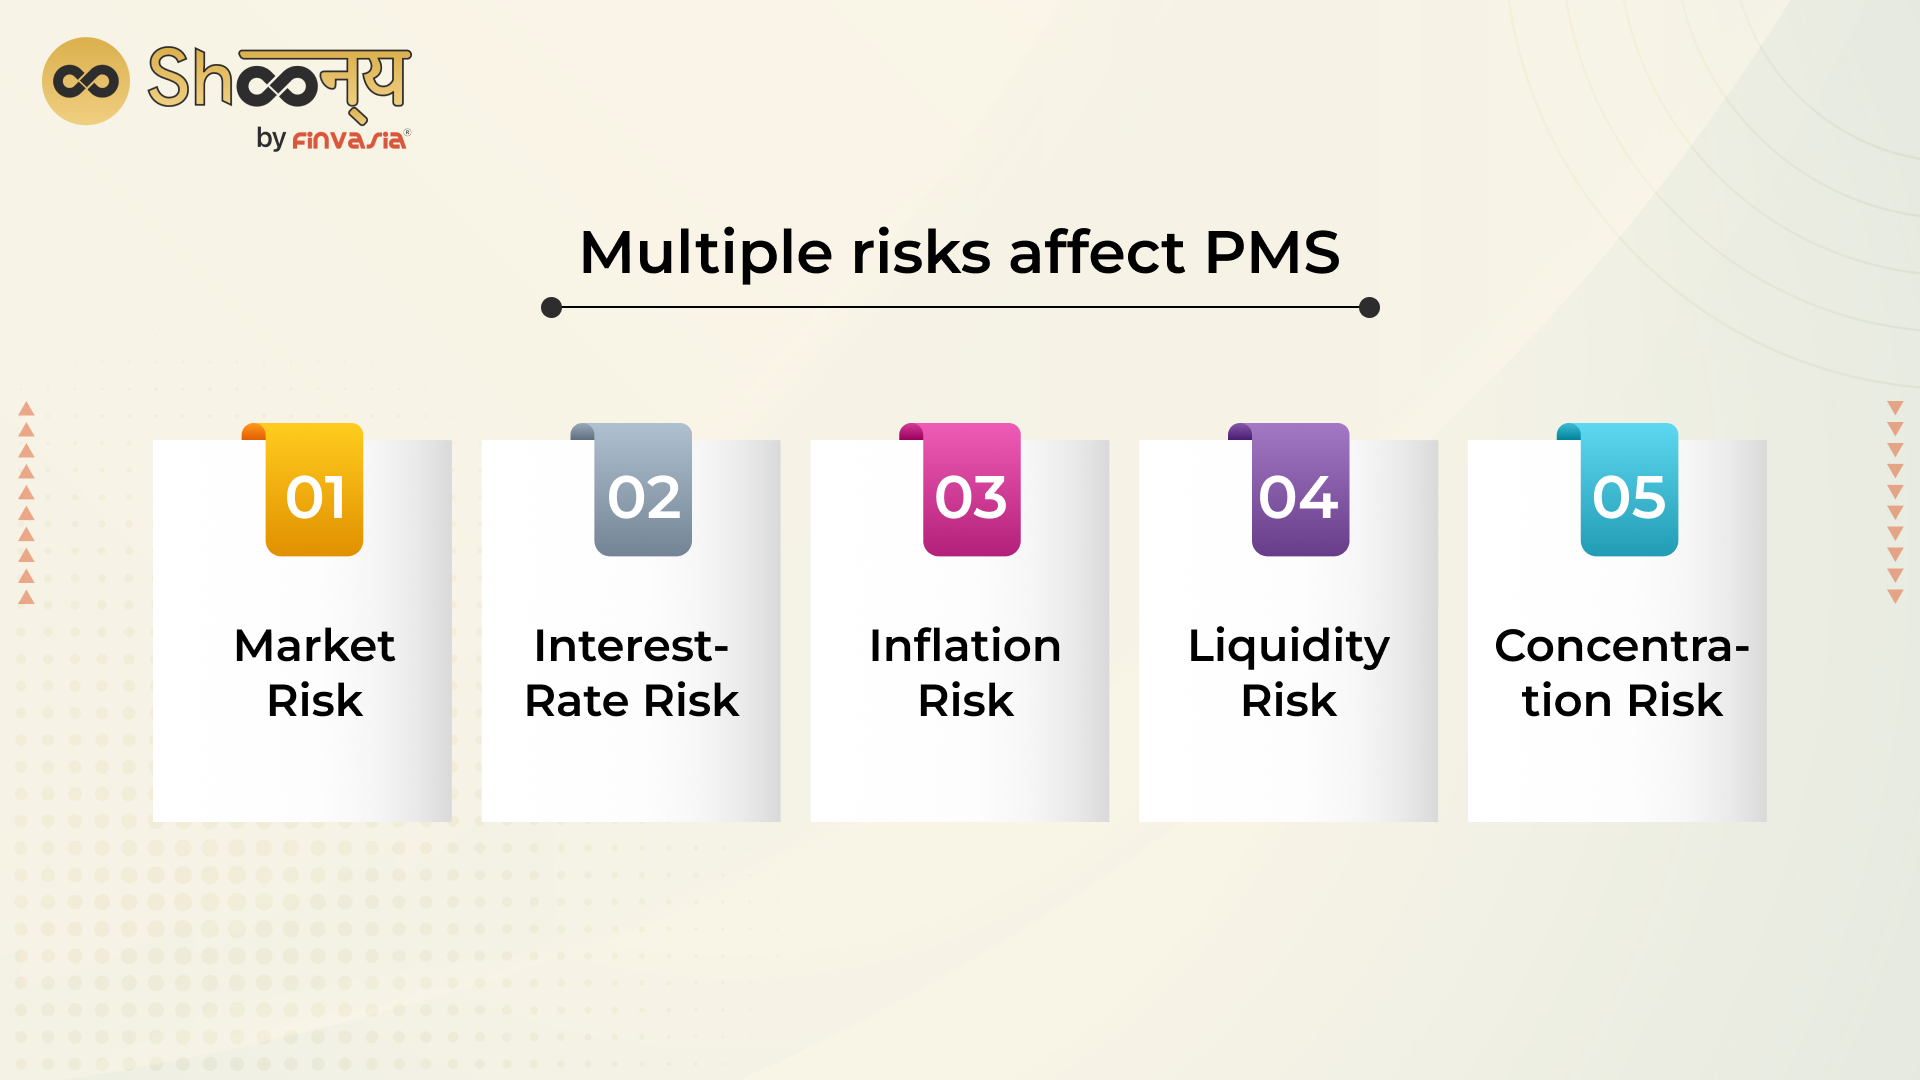 Mutiple risks affect PMS